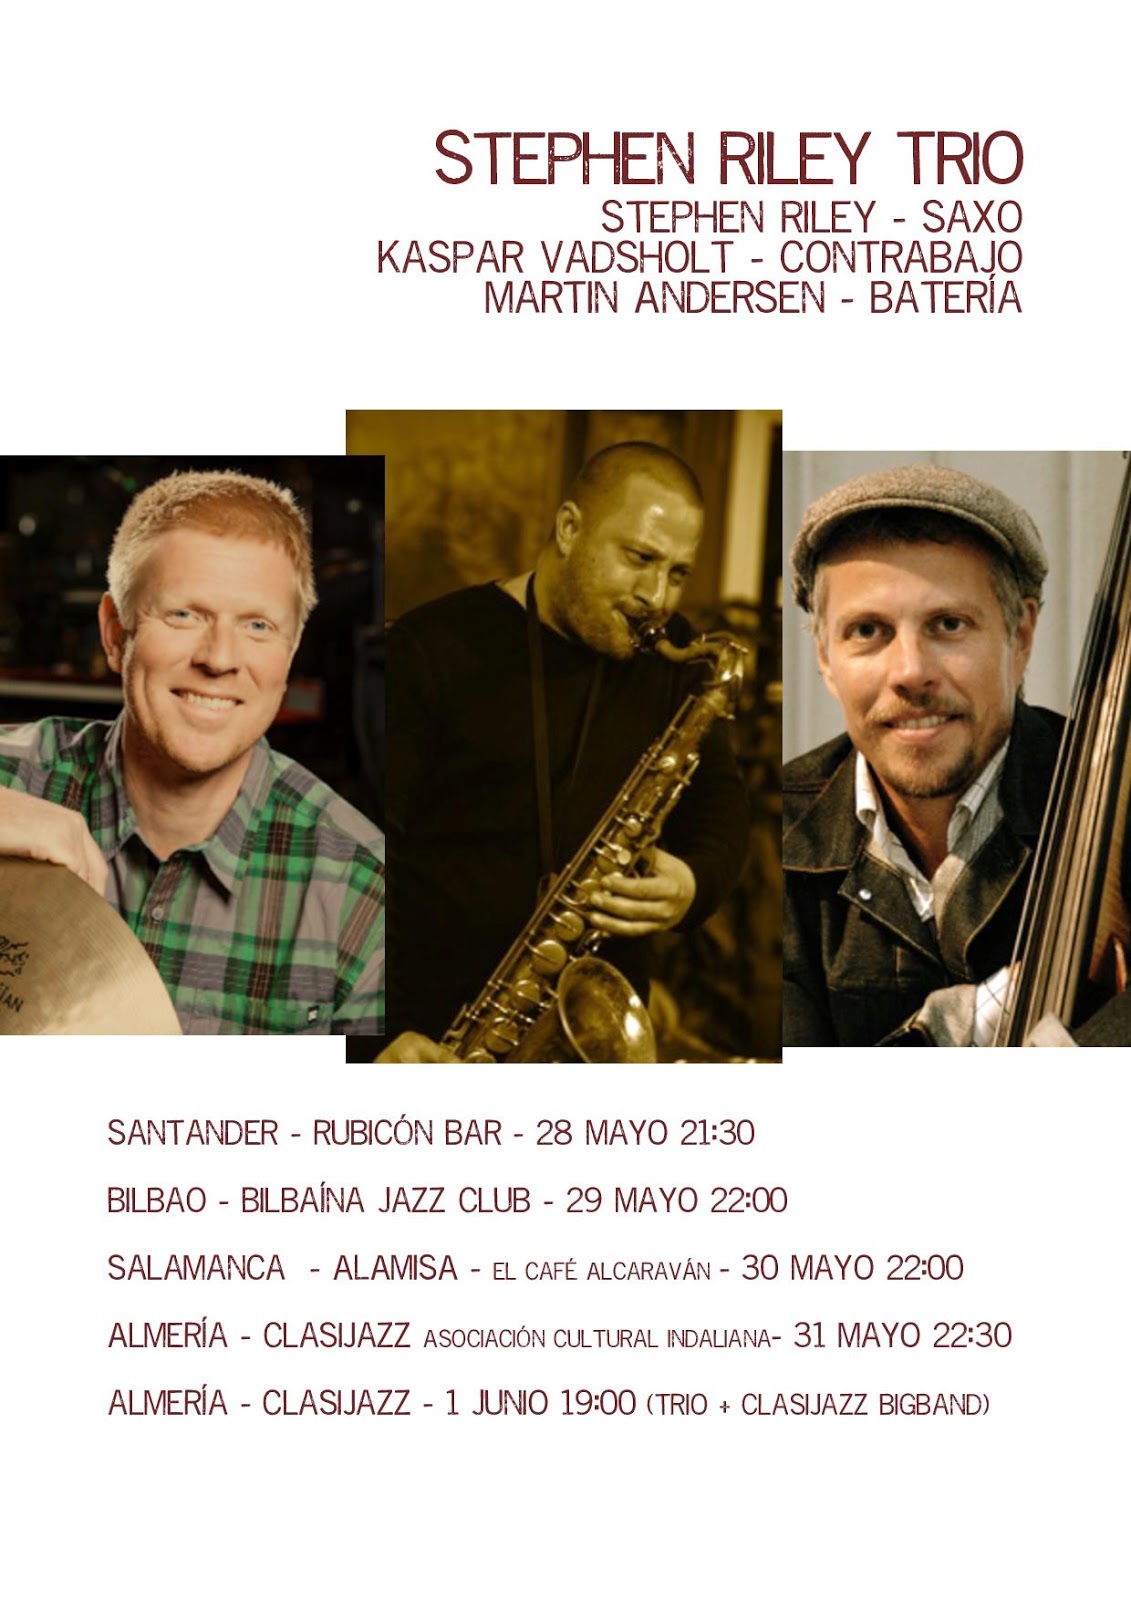 MartinAndersen_SR_Trio_Spain_Mayo2014